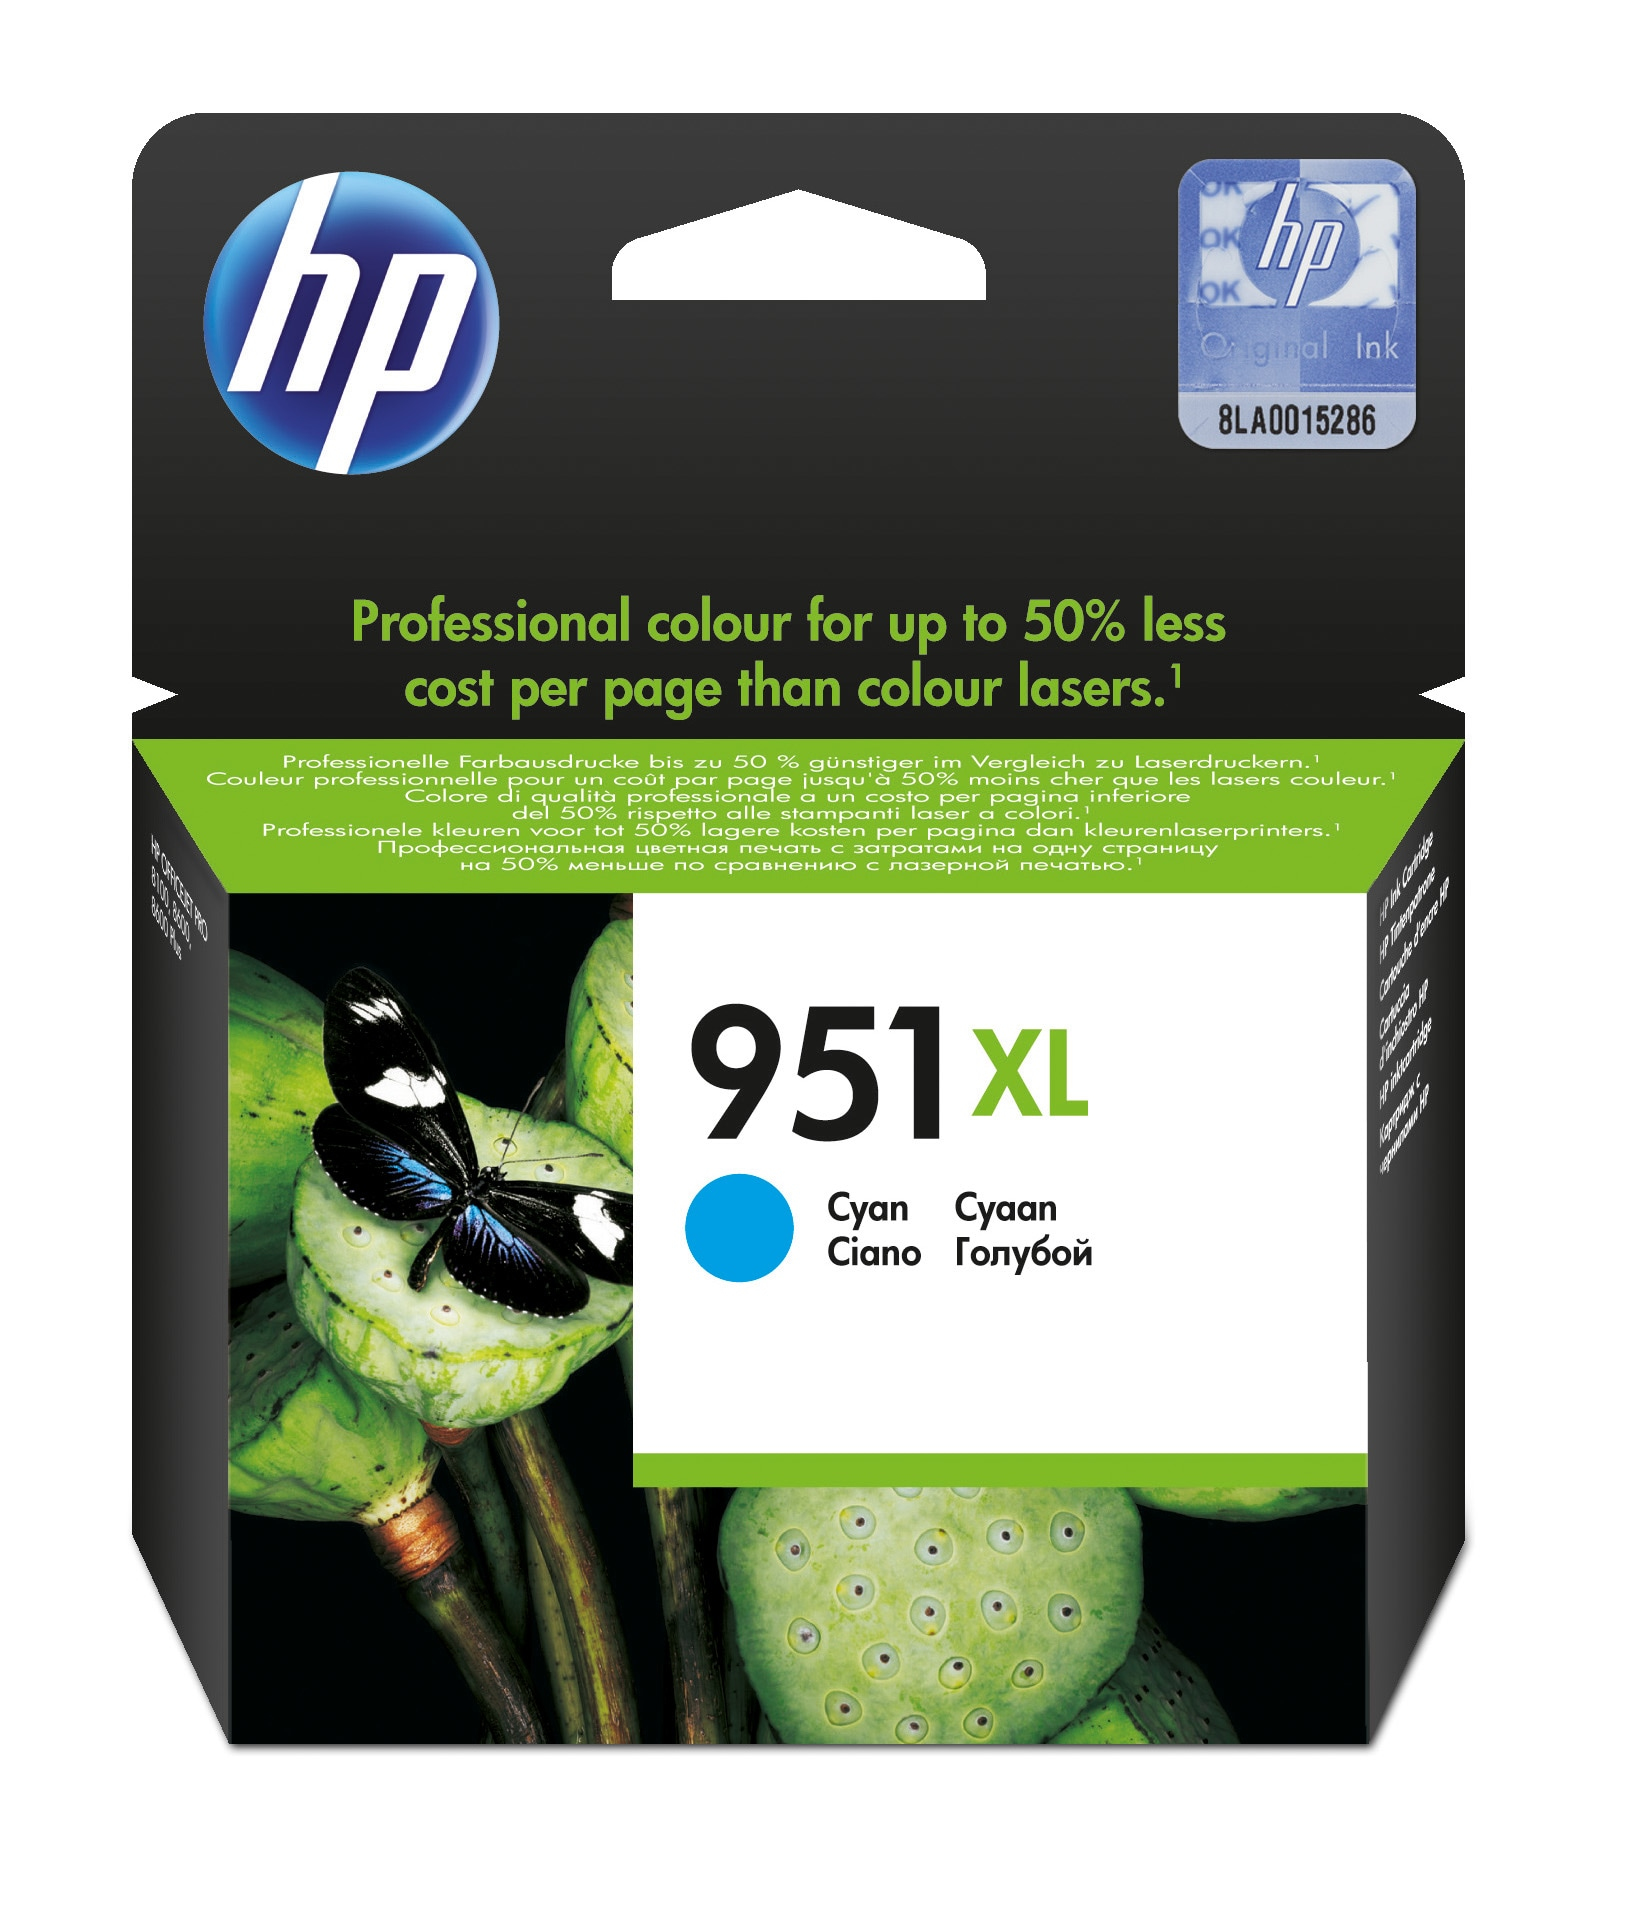 HP 951XL Cyan Officejet Inkjet Cartridge CN046AE